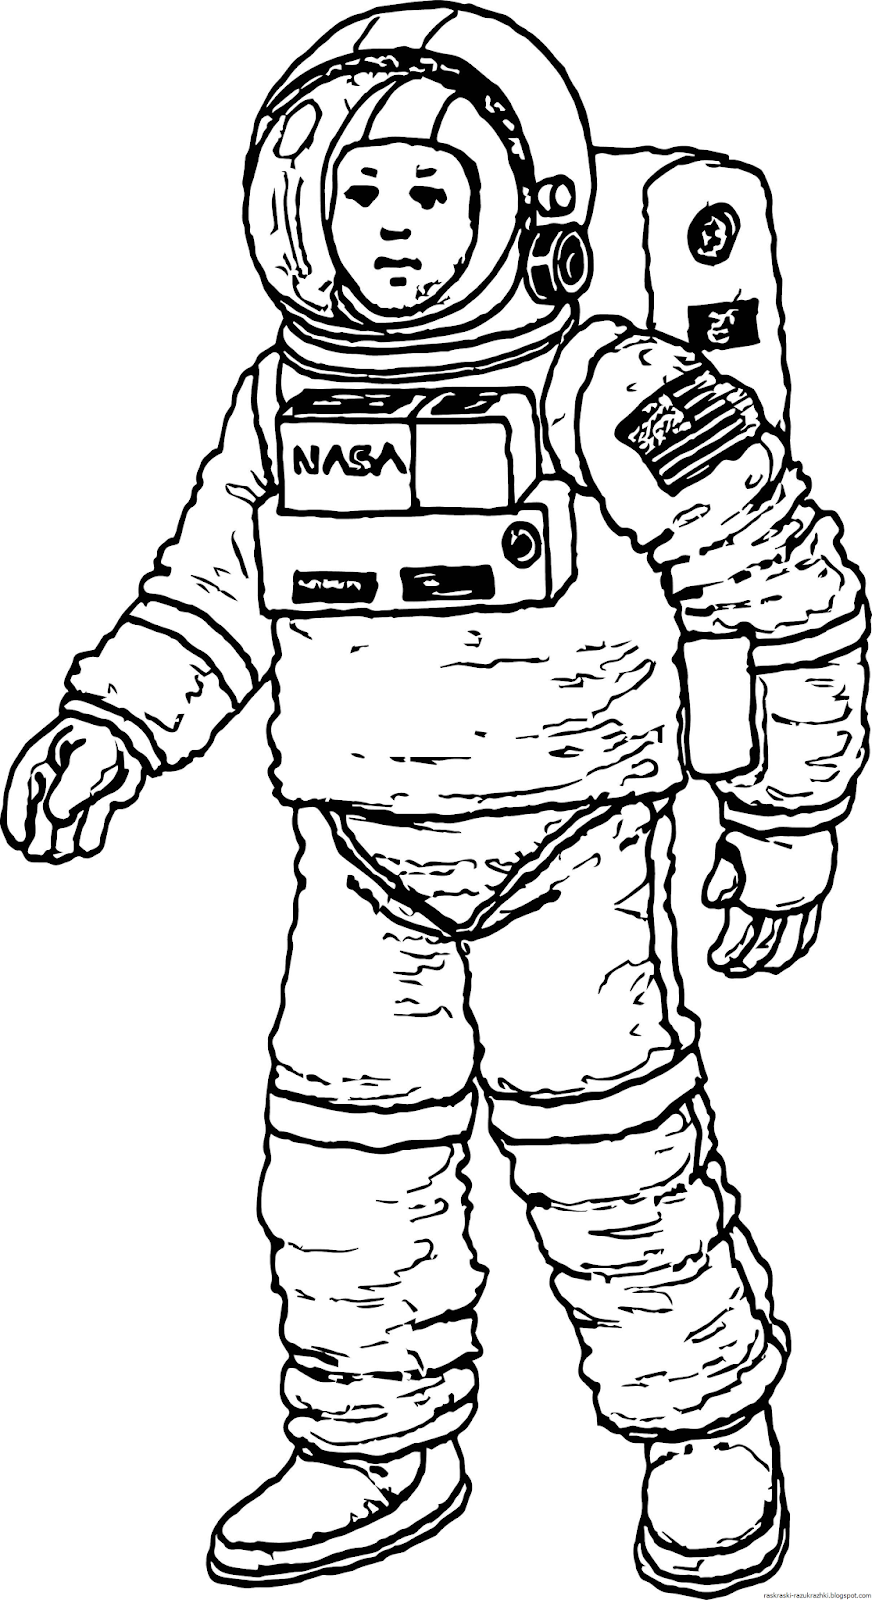 Скафандр раскраска. Космонавт раскраска для детей. Раскраска про космос и Космонавтов для детей. Космонавт рисунок. Рисунок Космонавта в скафандре для детей.